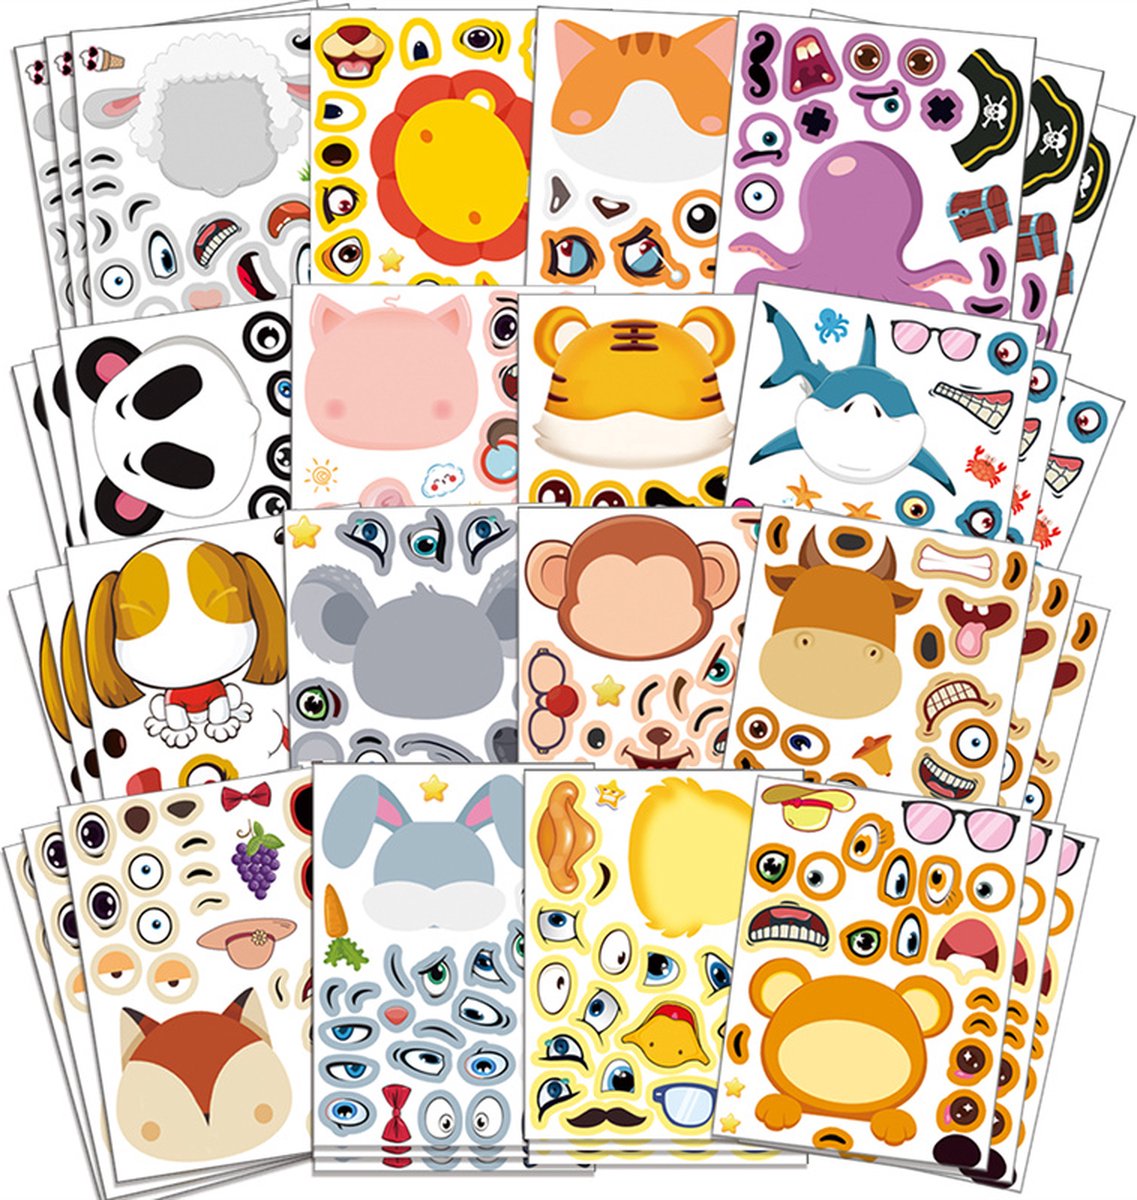 Safari / Jungle Knutselen met Stickers - 12 stuks - Dieren Knutselen met Stickers - Safari / Jungle / Dierentuin / Animals Stickers - Montessori - Motoriek Ontwikkelen - DIY Knutselen met Stickers - Gezichten Maken - Creatief Speelgoed voor Kinderen